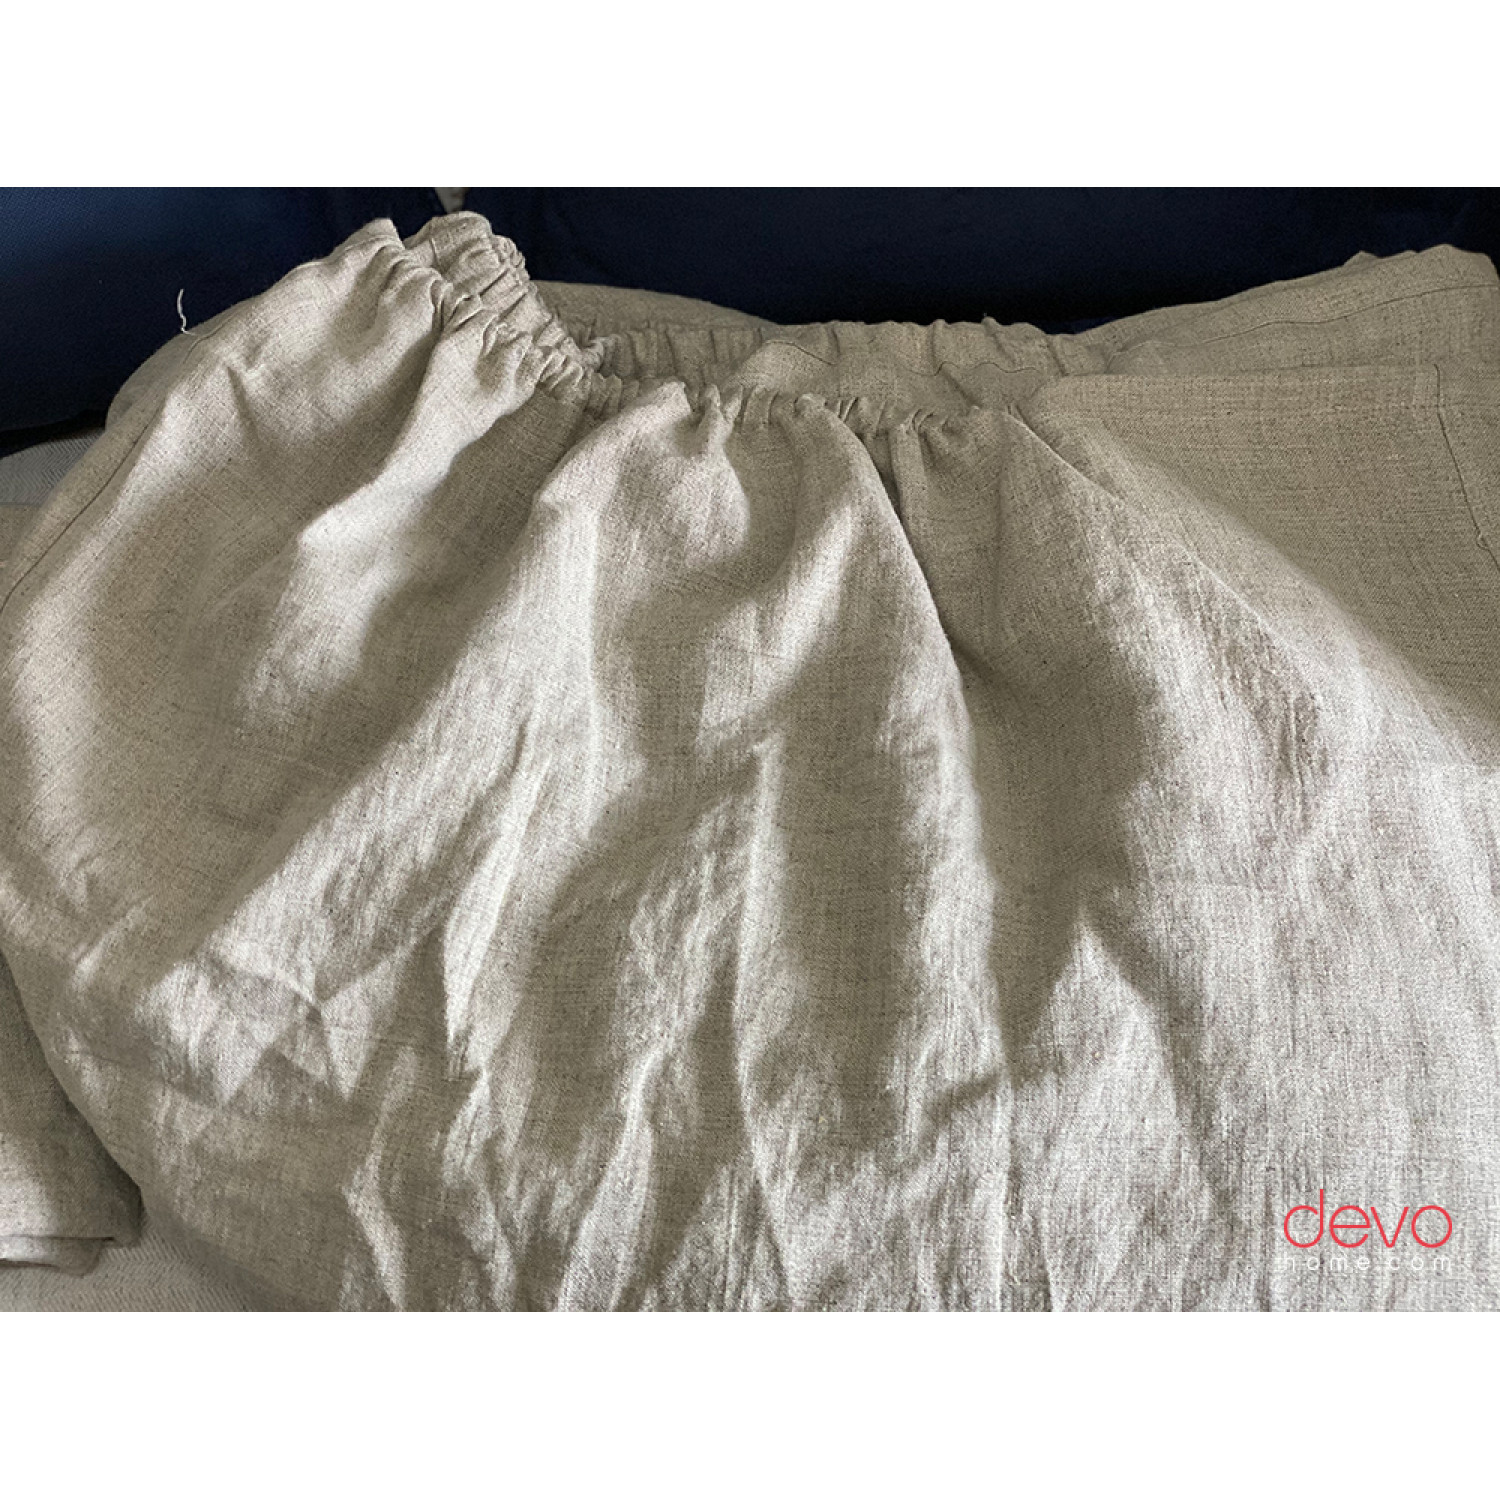 Hemp bed linen